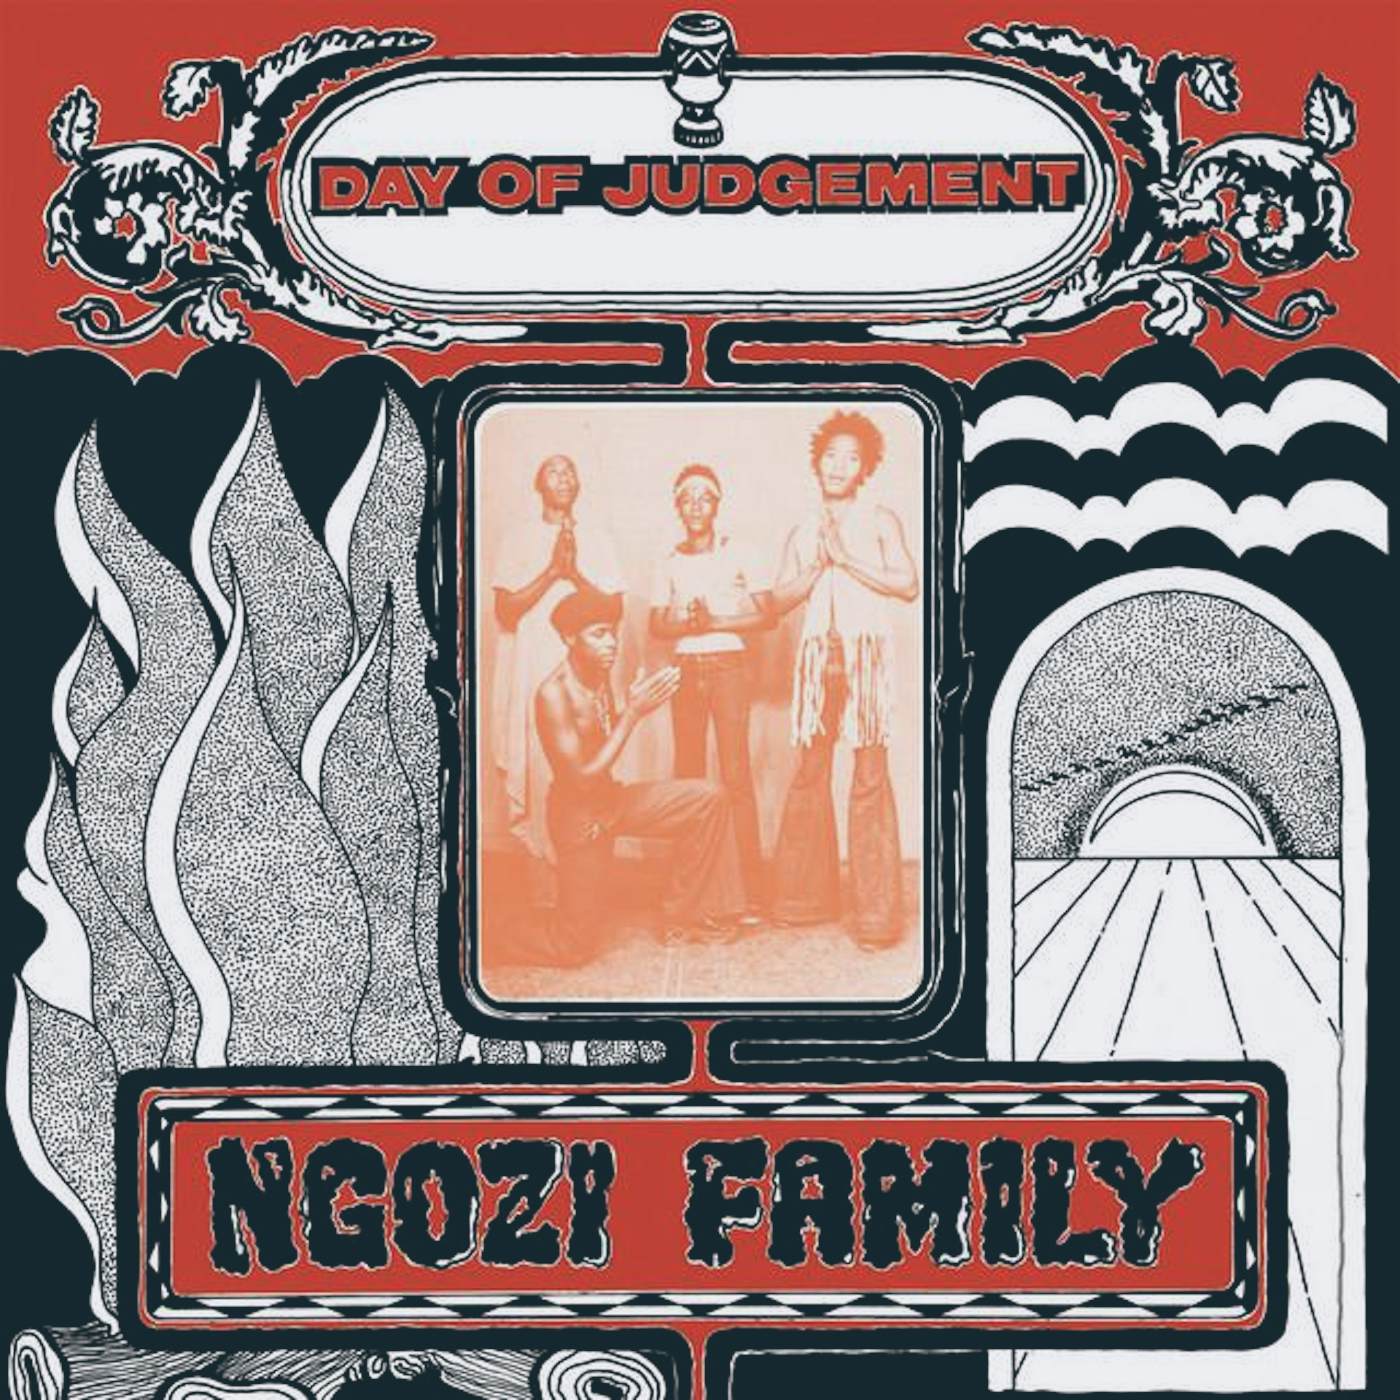 Ngozi Family